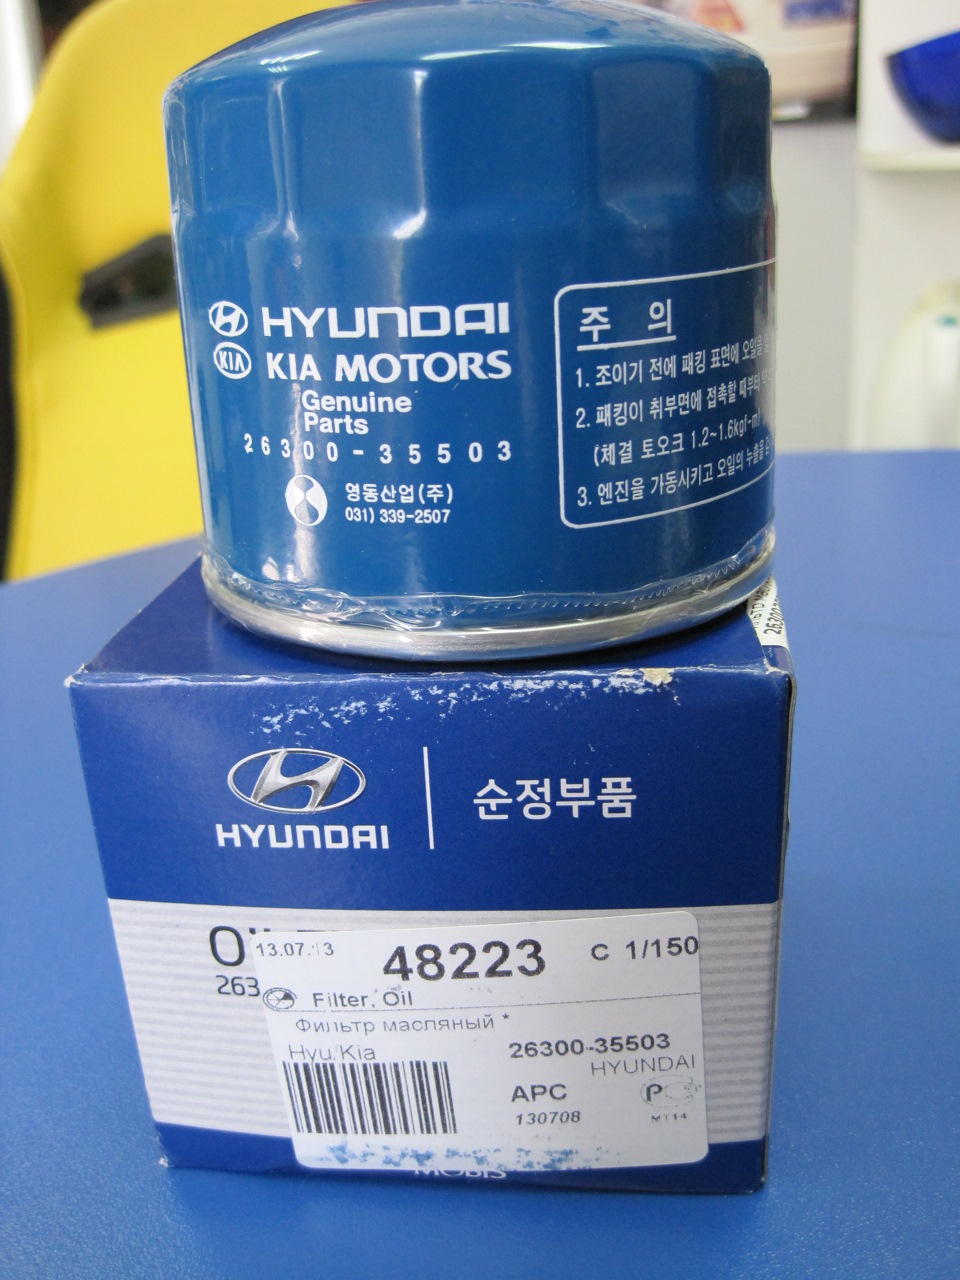 Фильтр масла хендай солярис. Hyundai Kia 2630035503 фильтр масляный. Фильтр масляный Киа Рио 1.6 2013. Фильтр масляный Киа Рио 1.6 2015. Масляный фильтр Киа Рио 4 1.6.